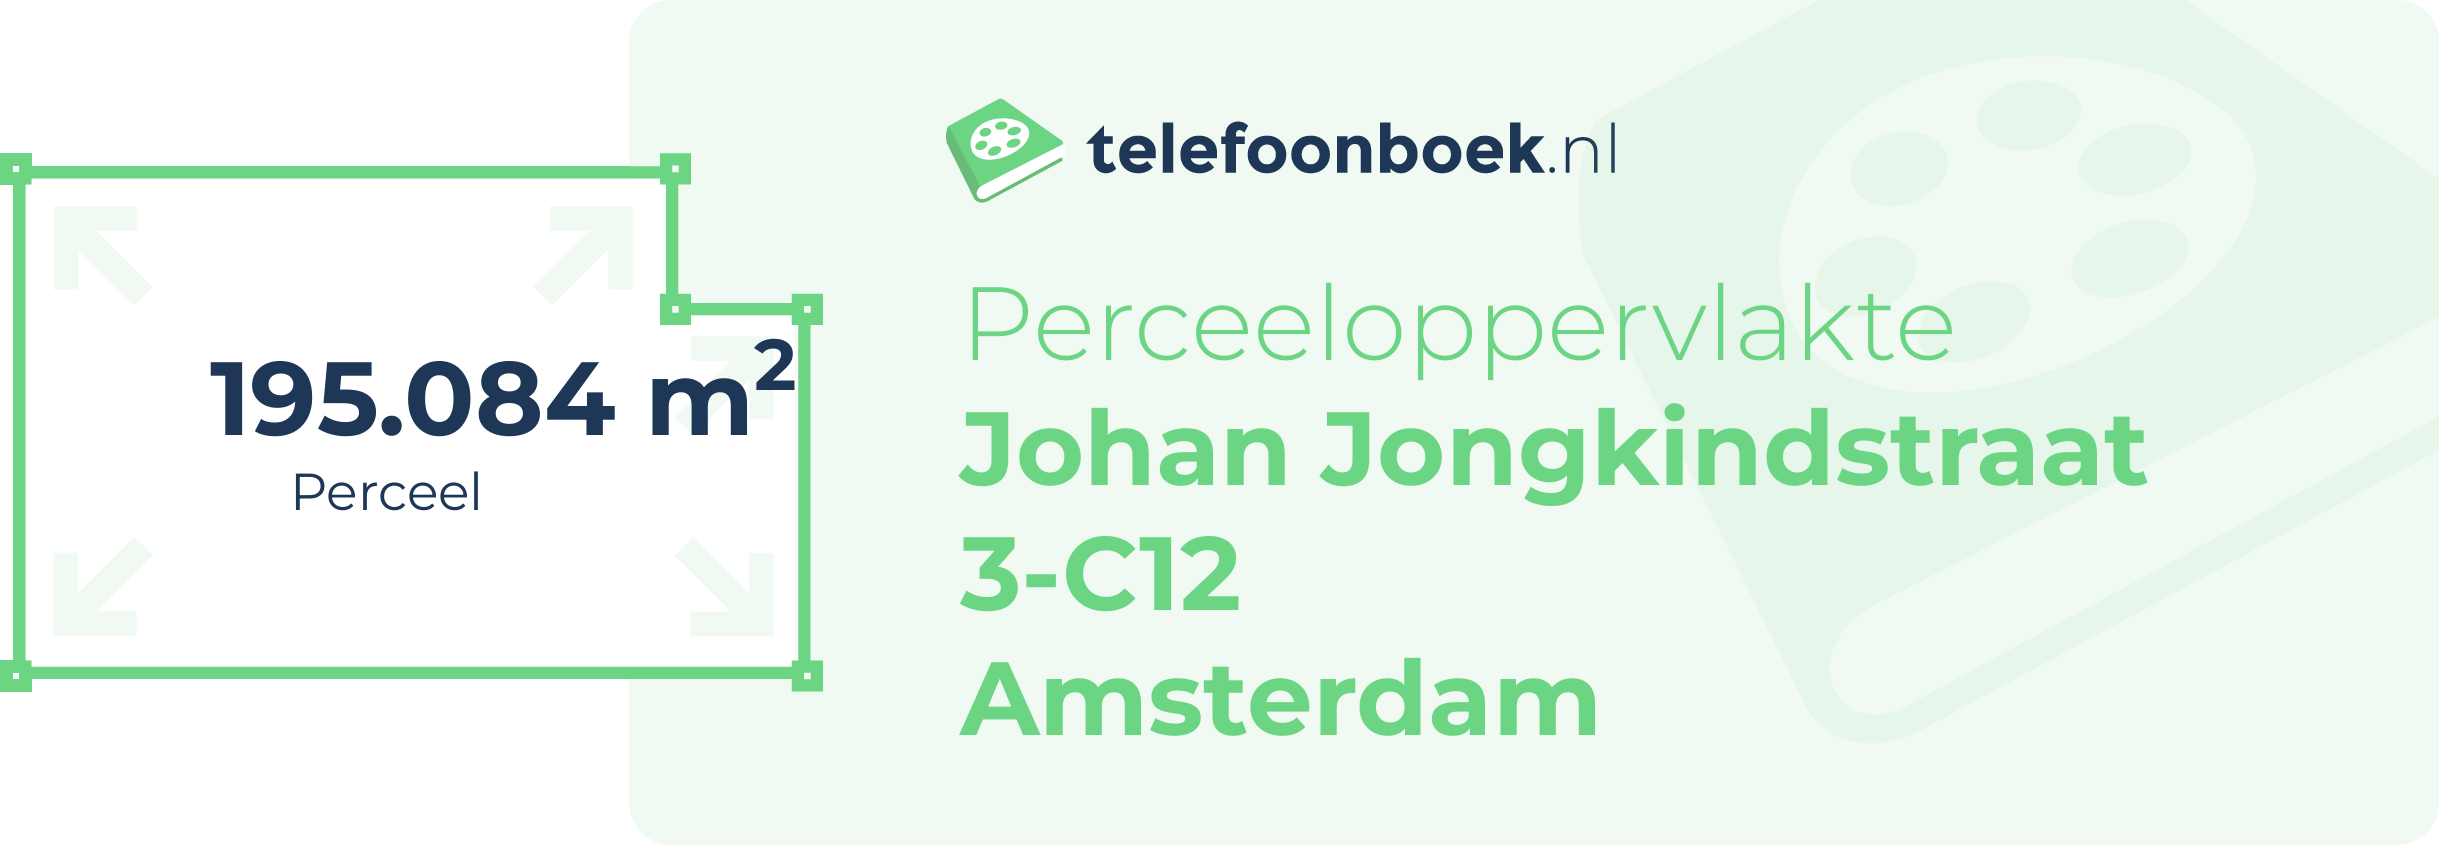 Perceeloppervlakte Johan Jongkindstraat 3-C12 Amsterdam